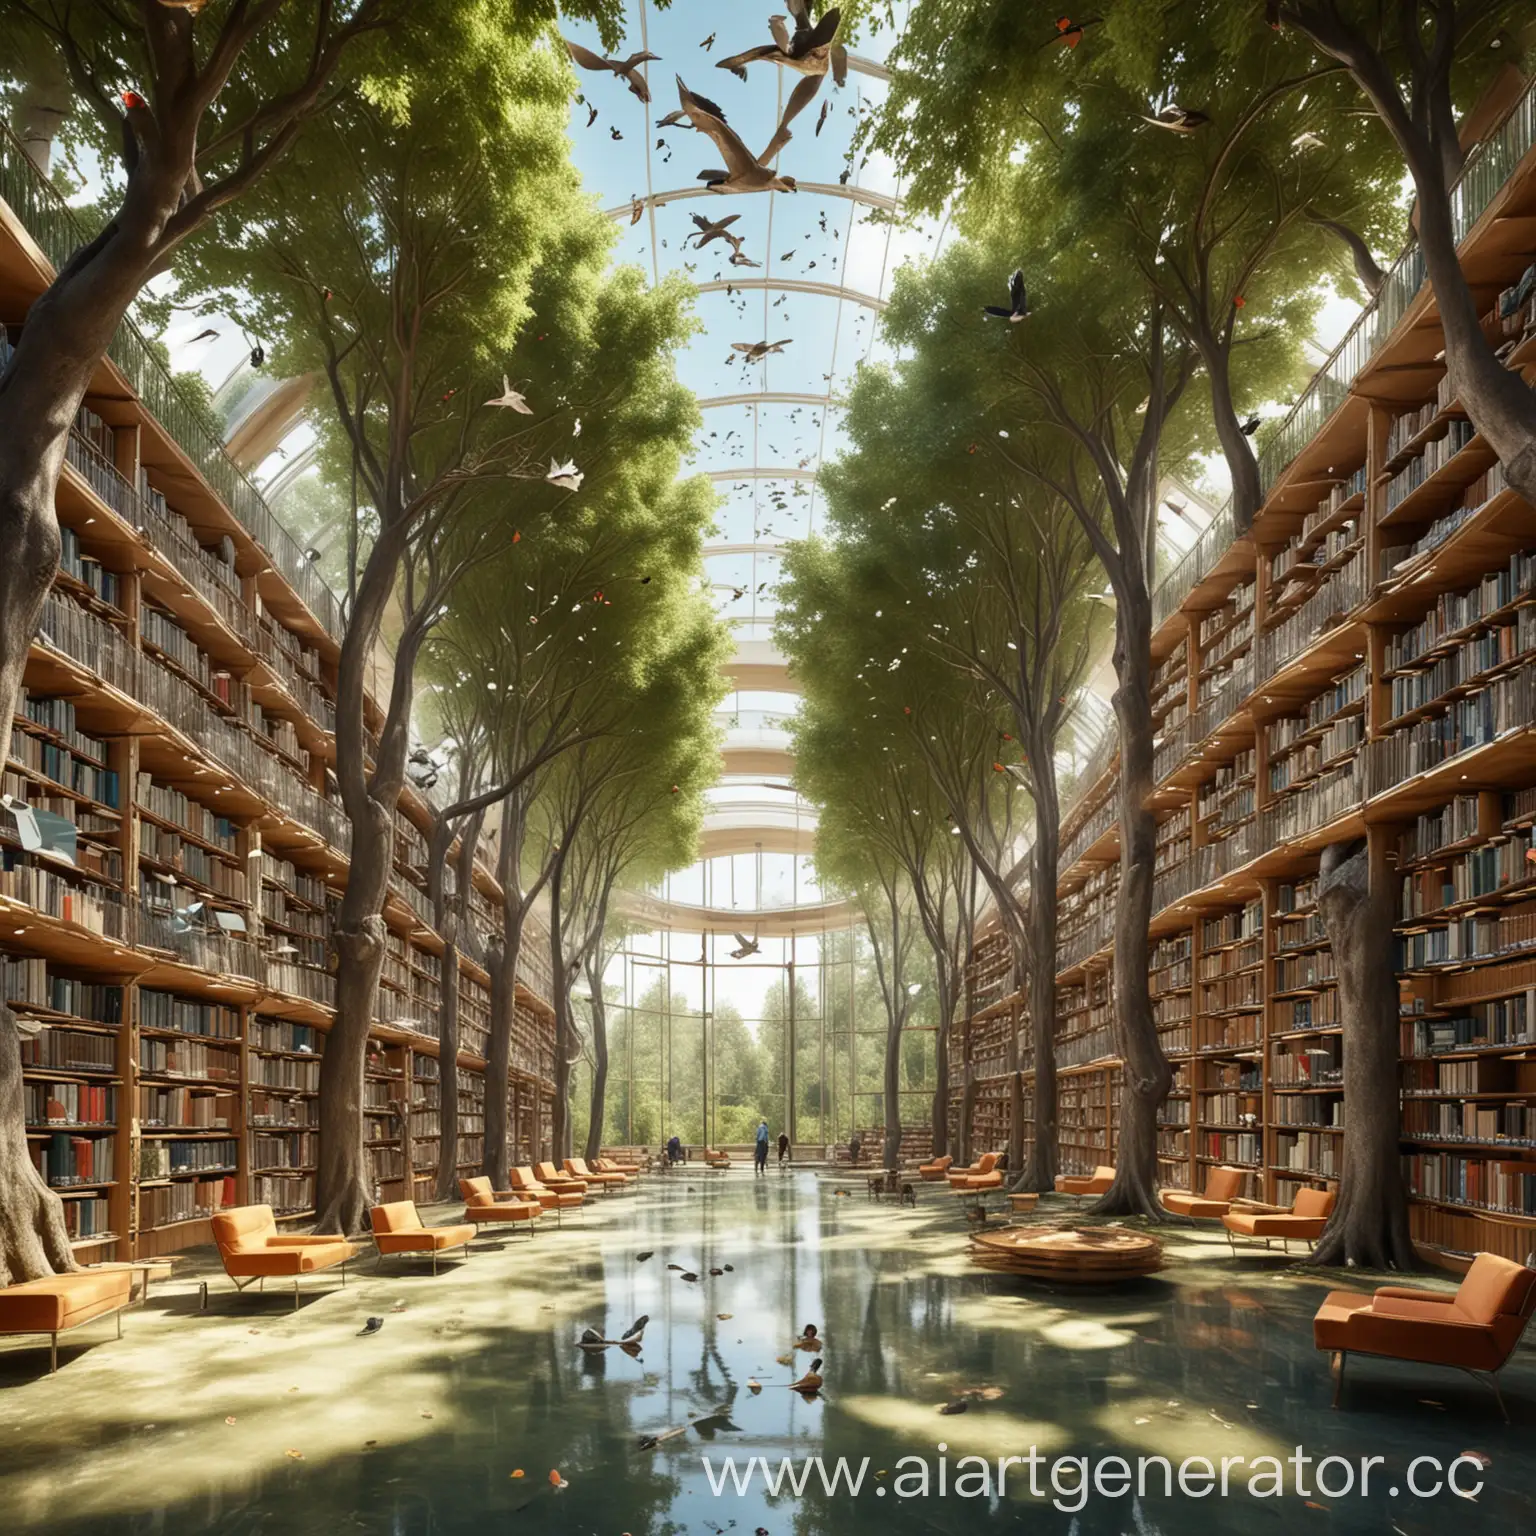 Просторная библиотека, с панорамными стенами, вокруг много деревьев, иновационные технологии, летают птицы, и прудик